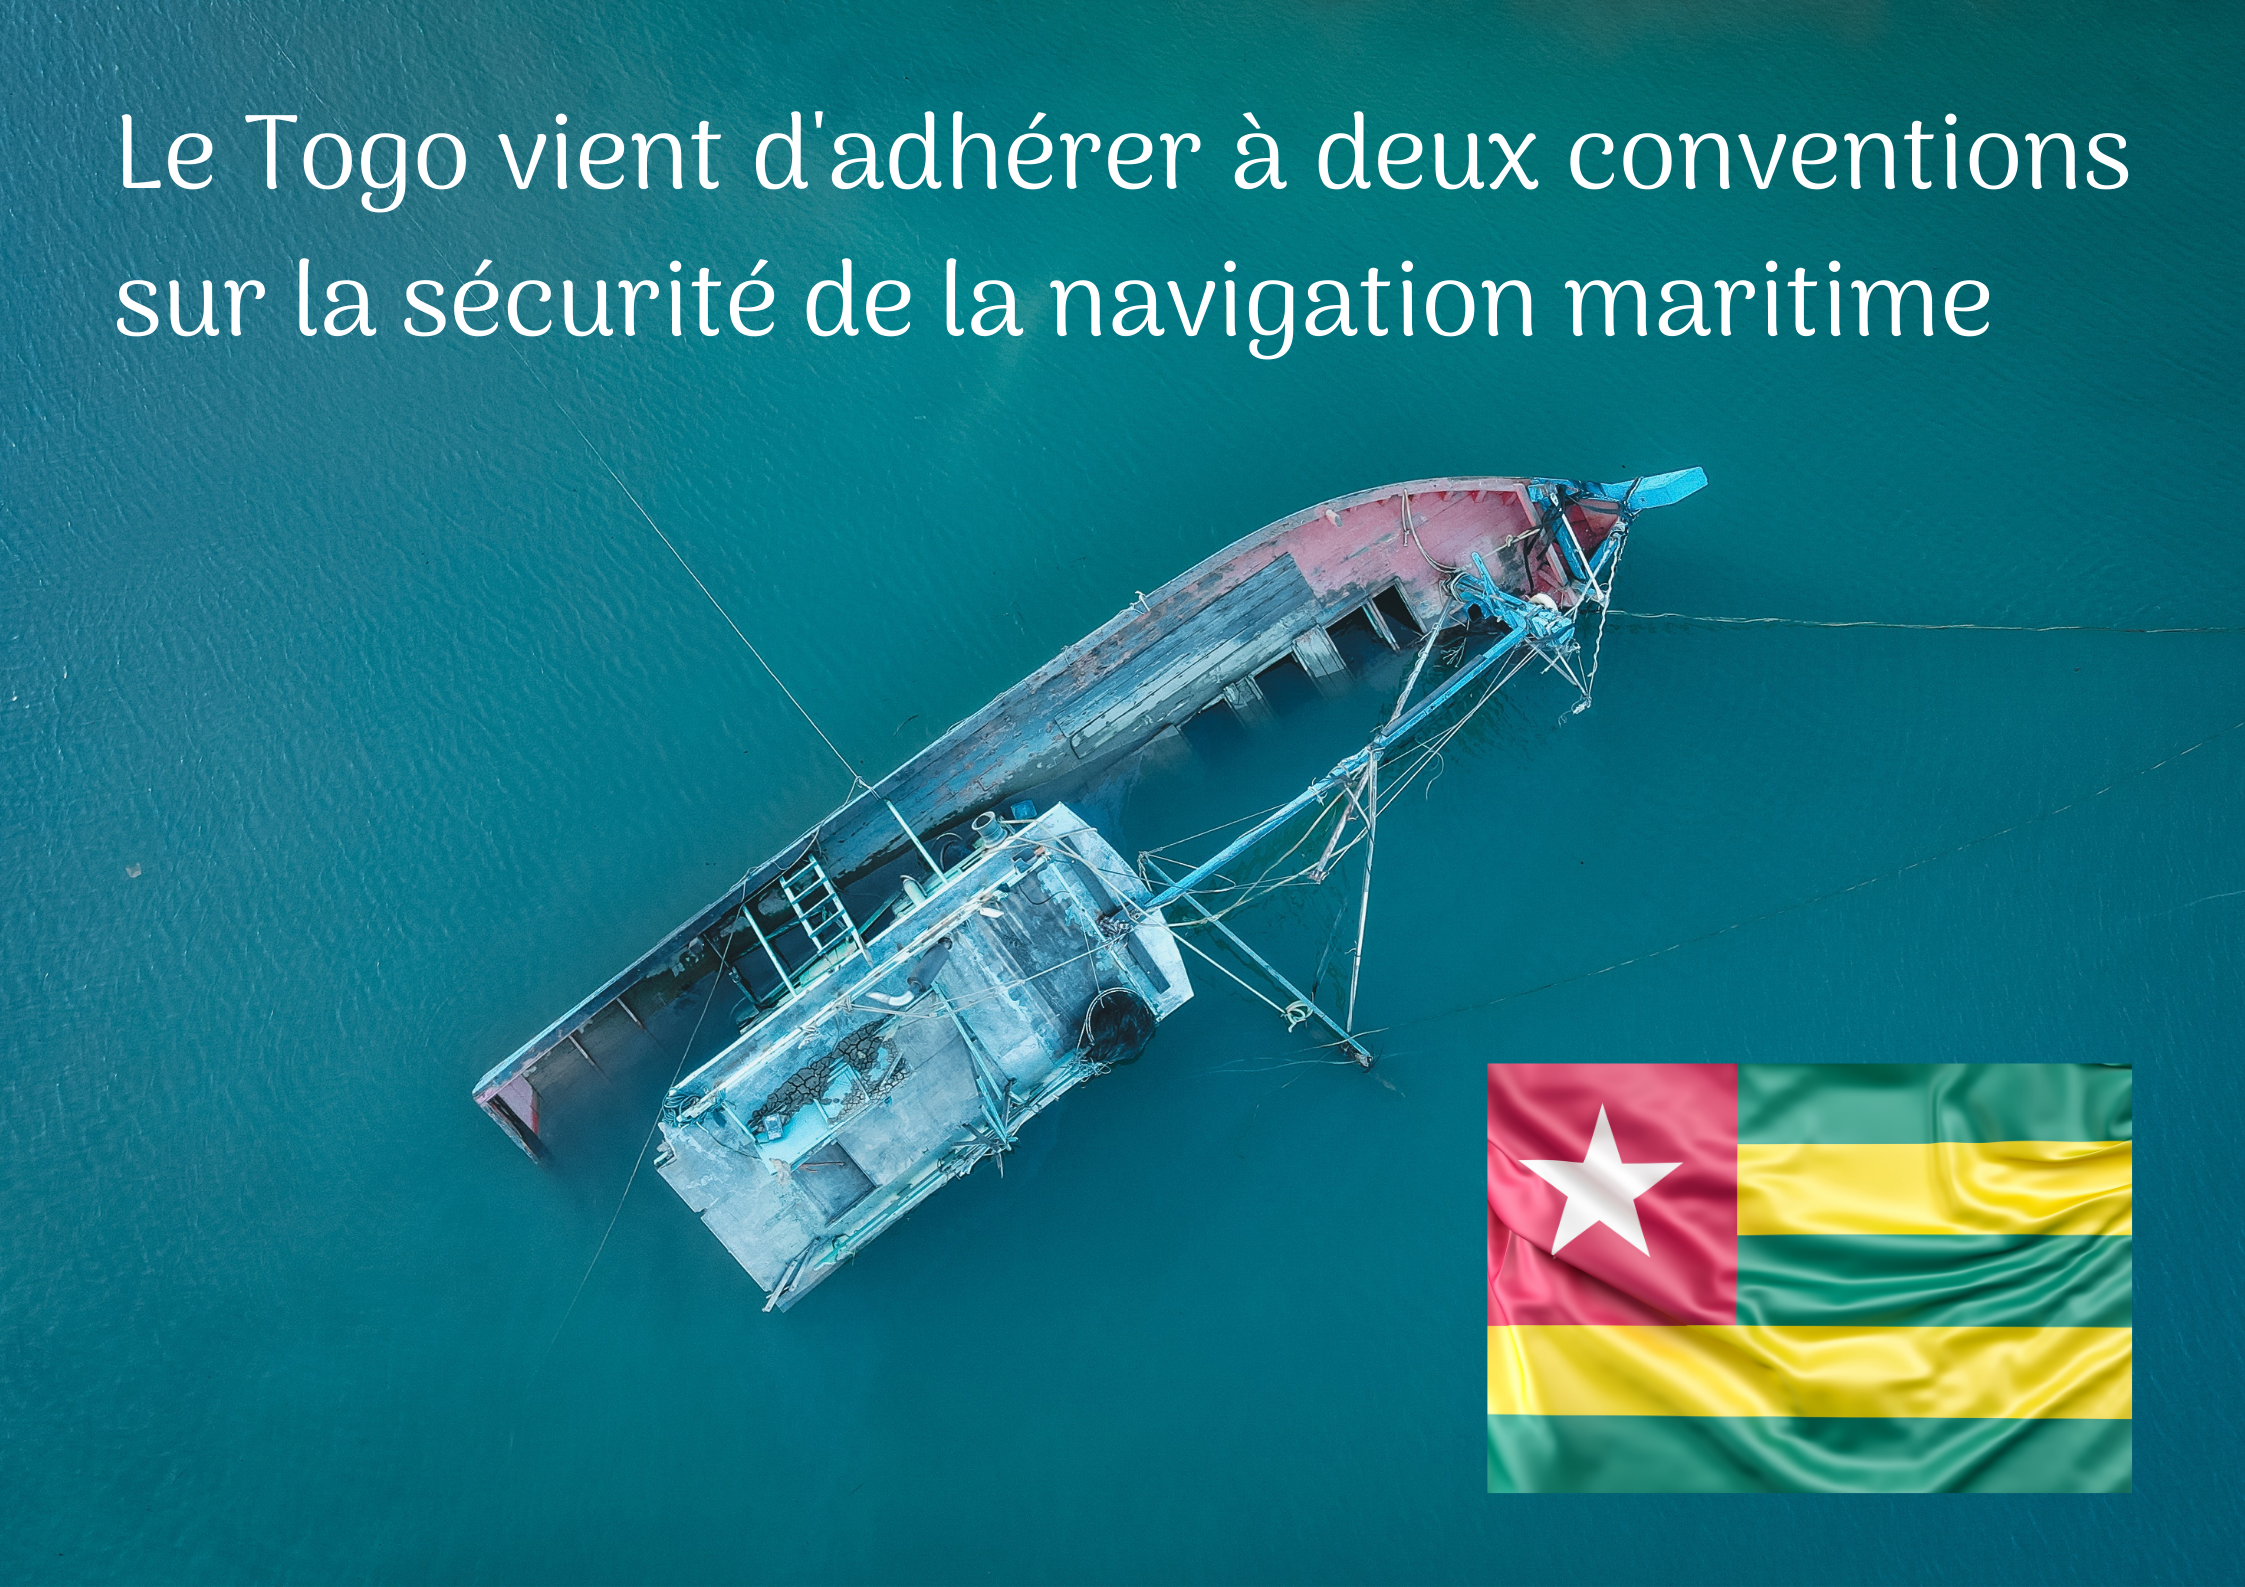 Le Togo vient d’adhérer à deux conventions sur la sécurité de la navigation maritime